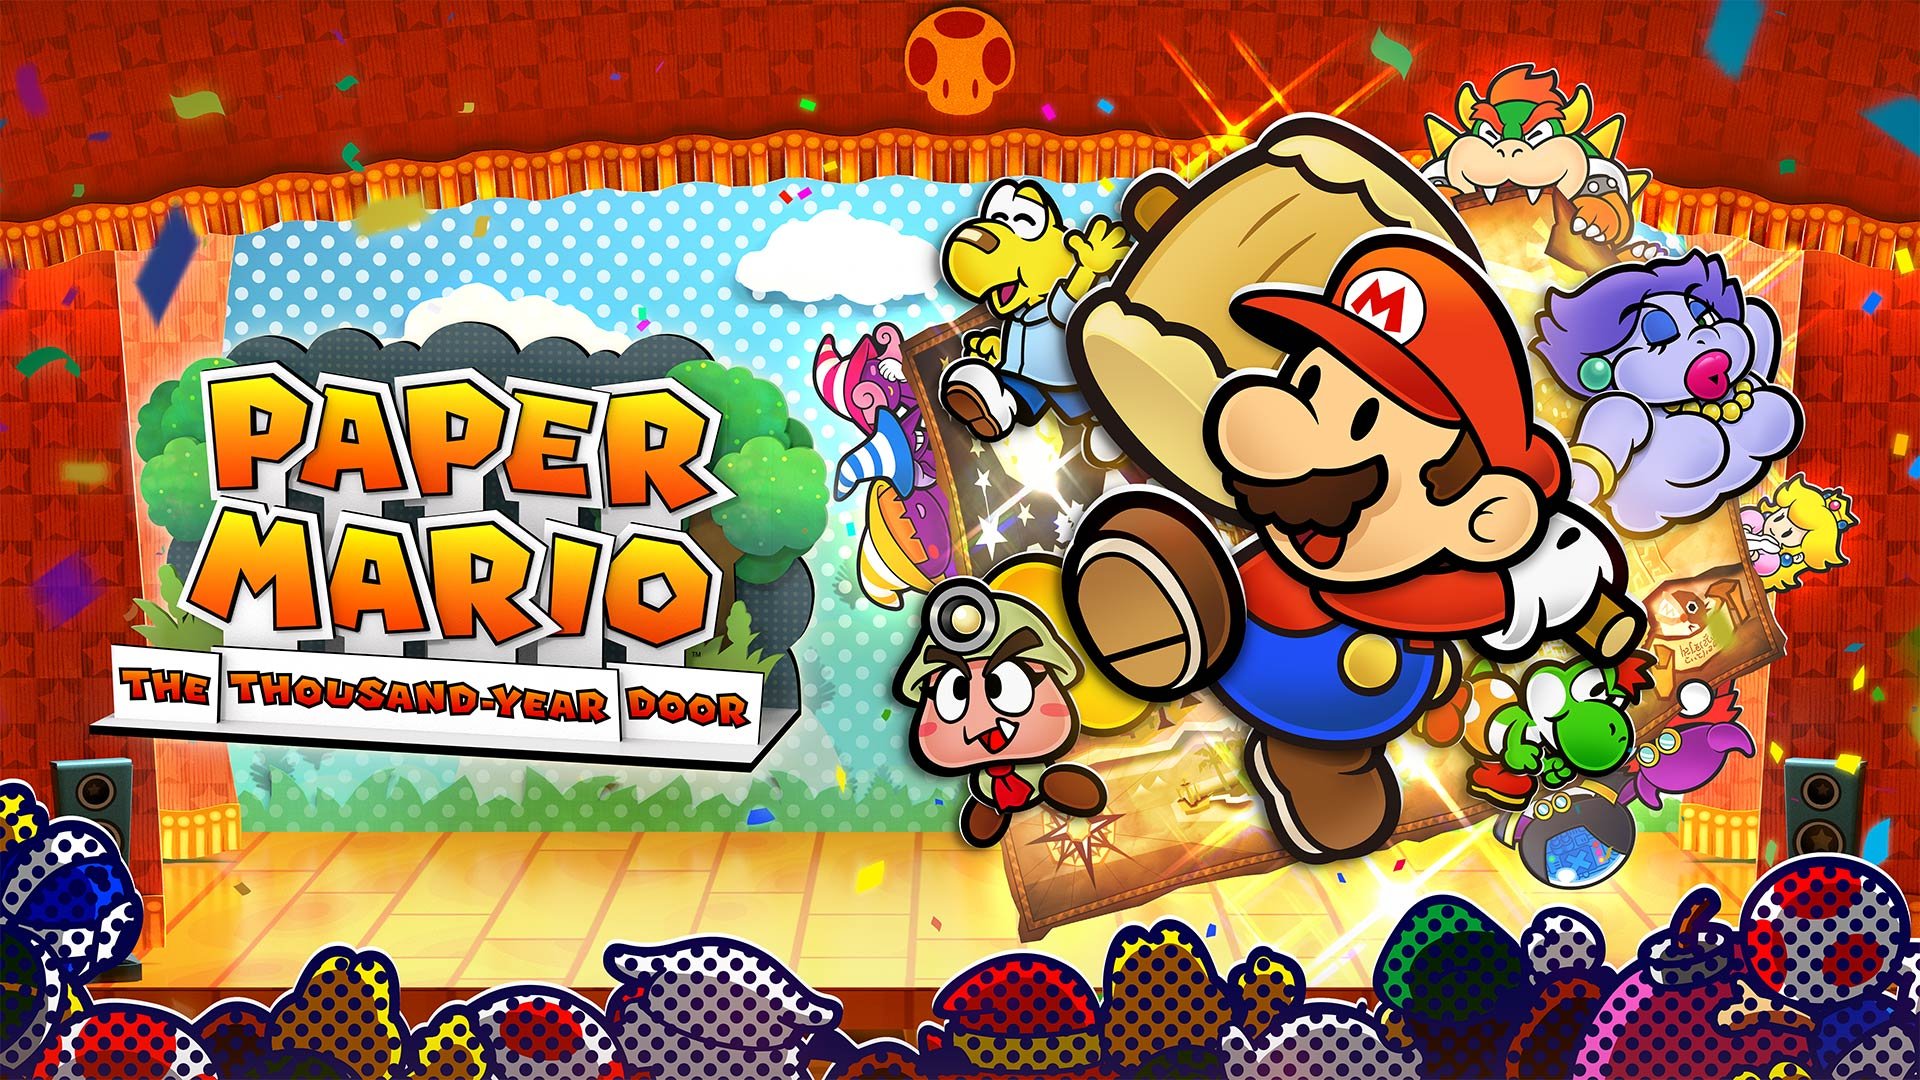 La nouvelle bande-annonce de Paper Mario : The Thousand-Year Door montre l'intro remaniée du jeu.